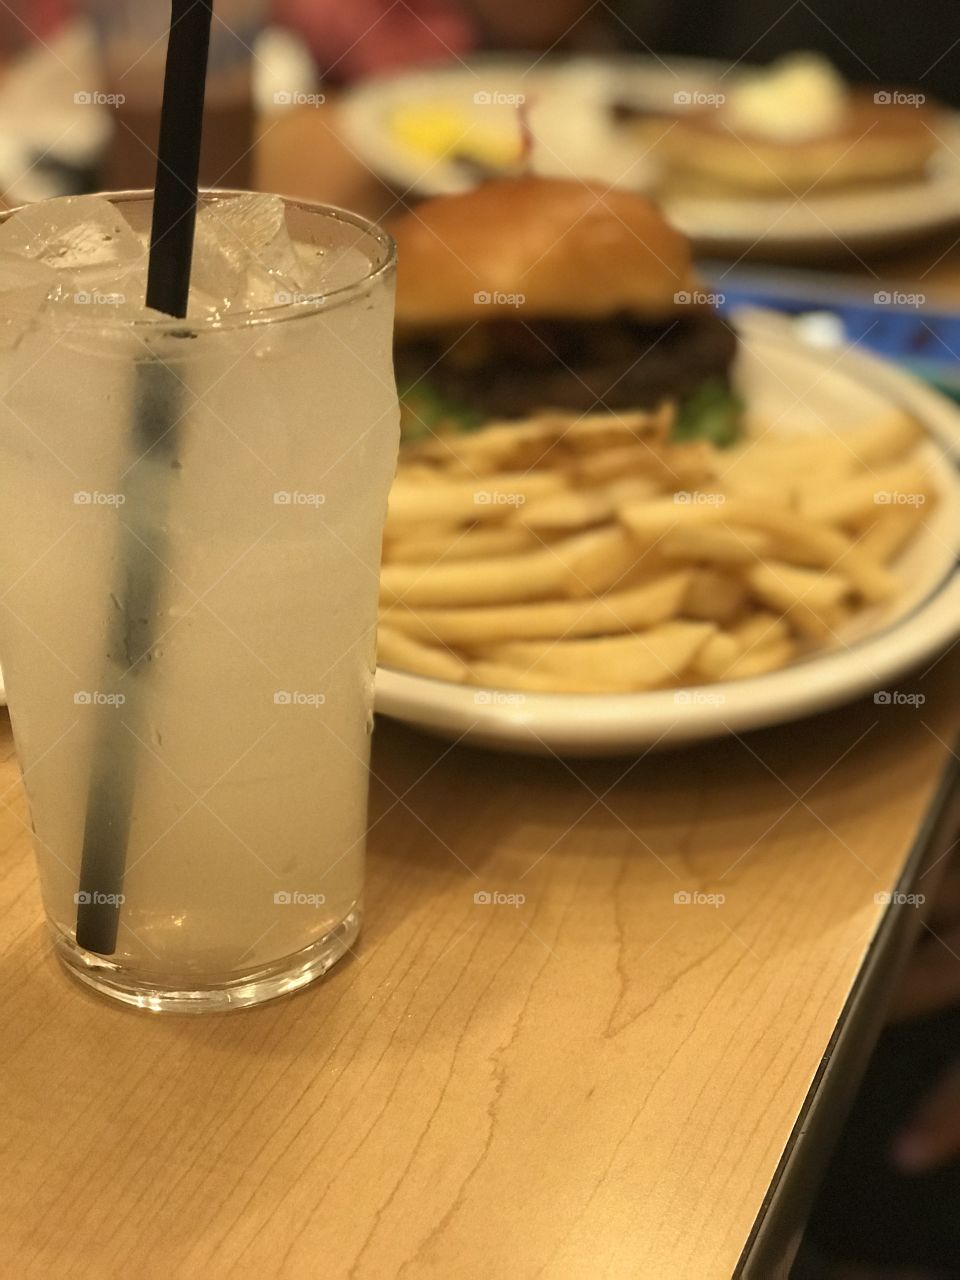 Dinner with lemonade at IHOP 